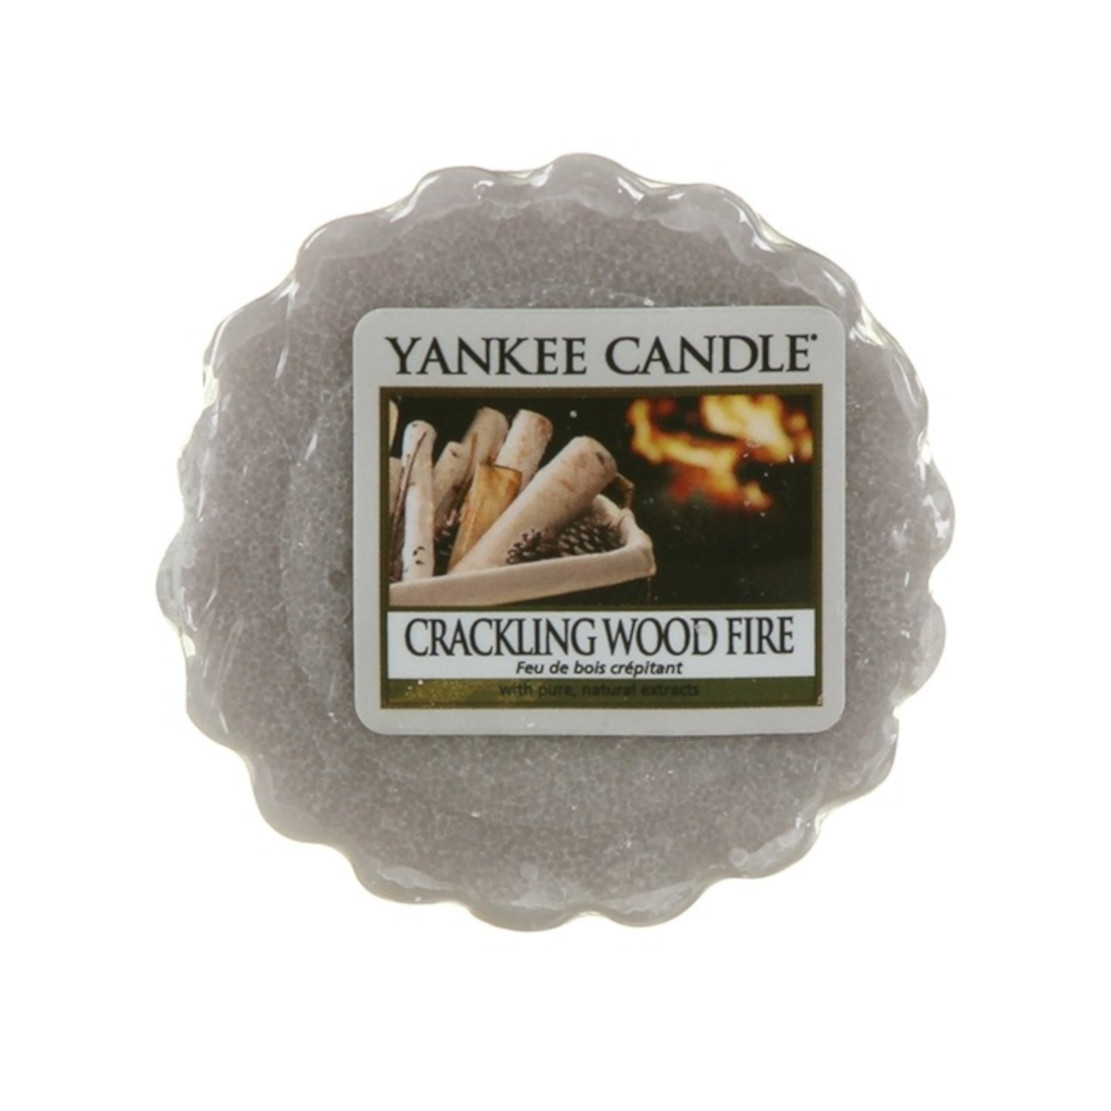 Yankee Candle Crackling Wood Fire Wax Melt Tart